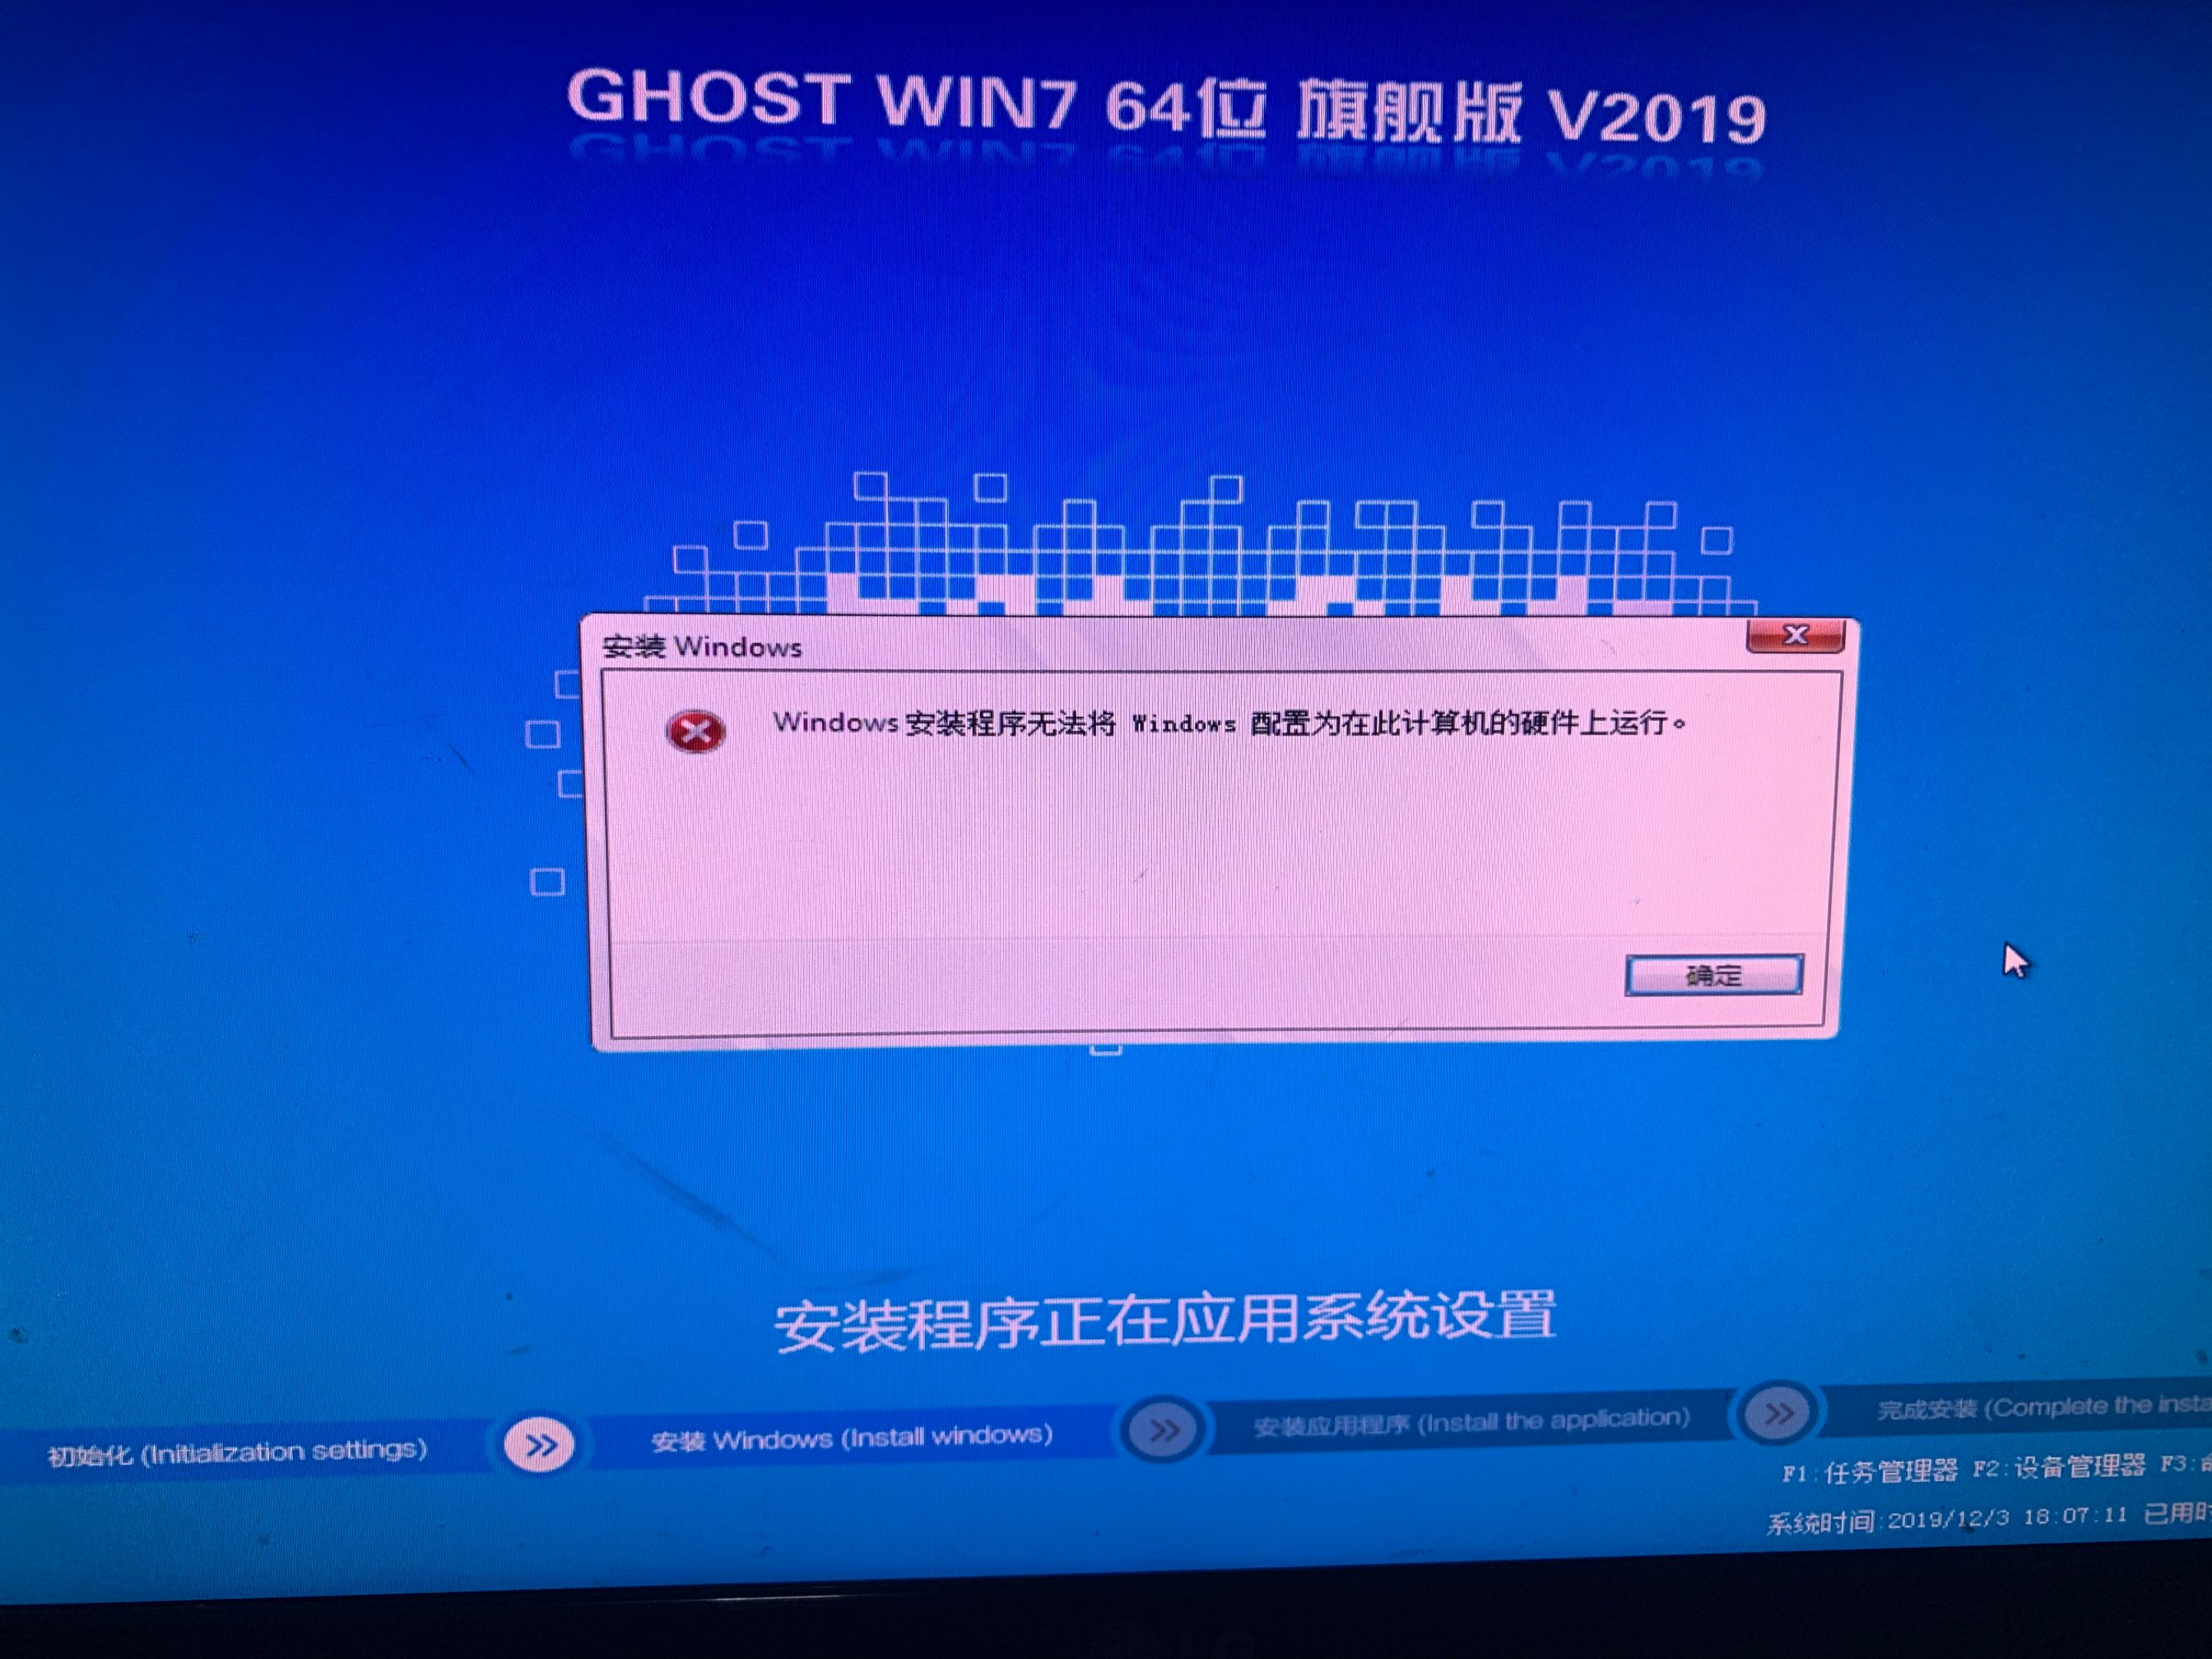 【问题汇总】Windows安装程序无法将Windows配置为在此计算机上运行